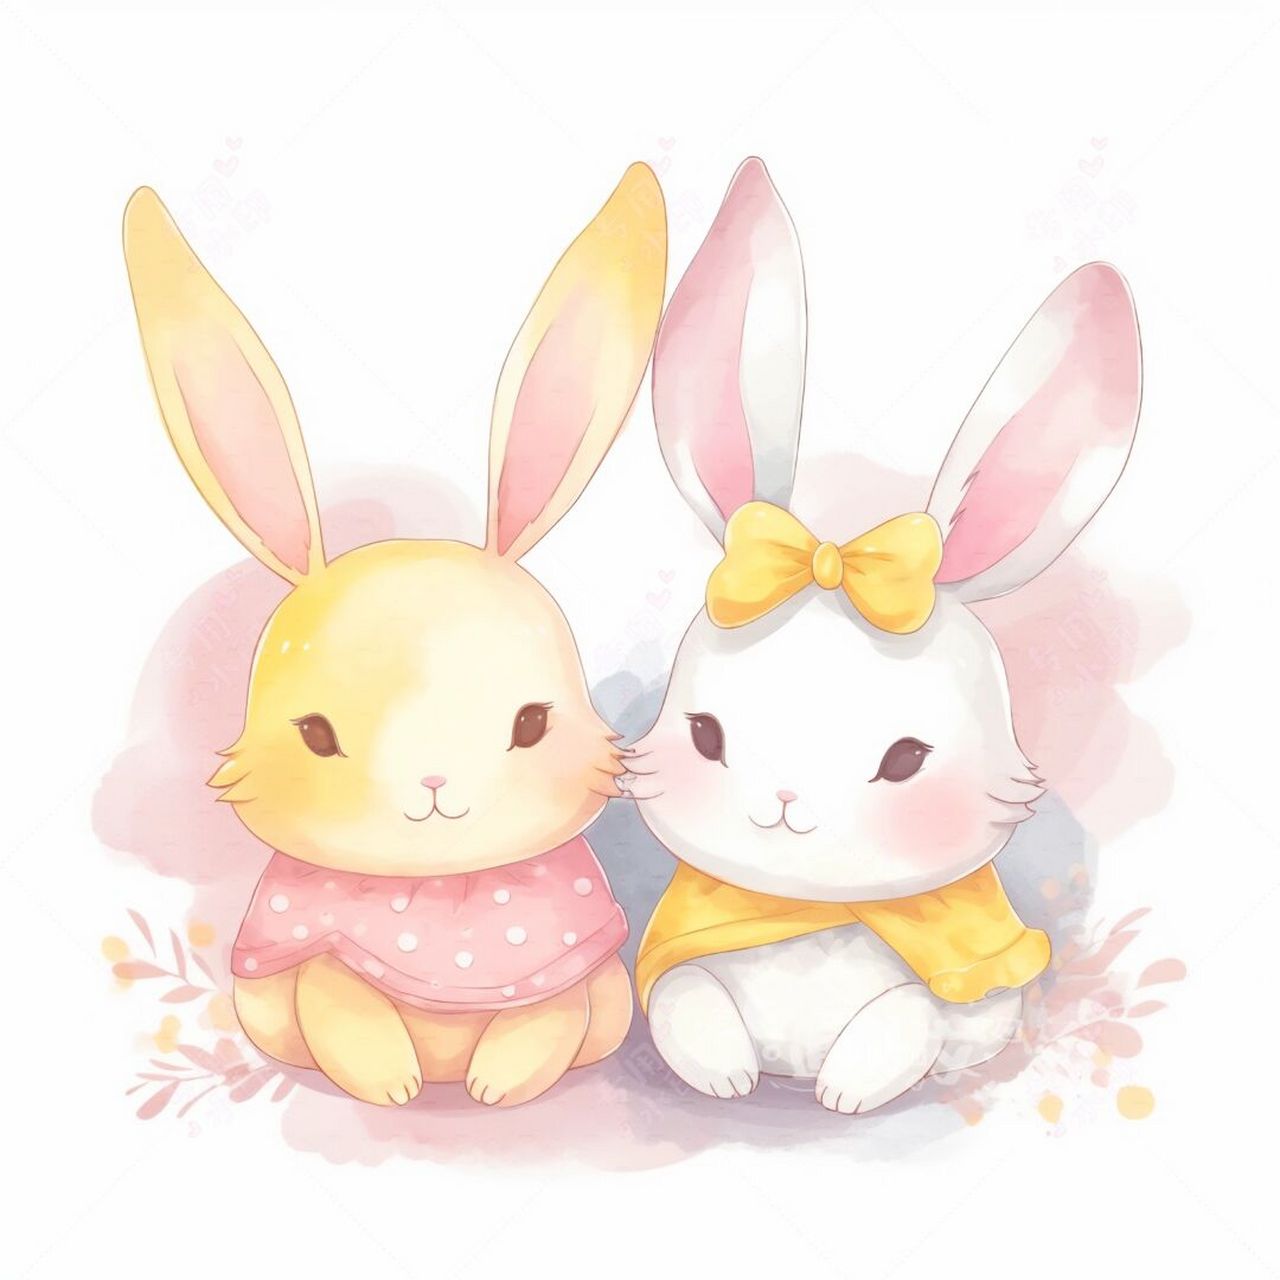 可爱小兔子卡通画 兔子小闺蜜 可可爱爱 